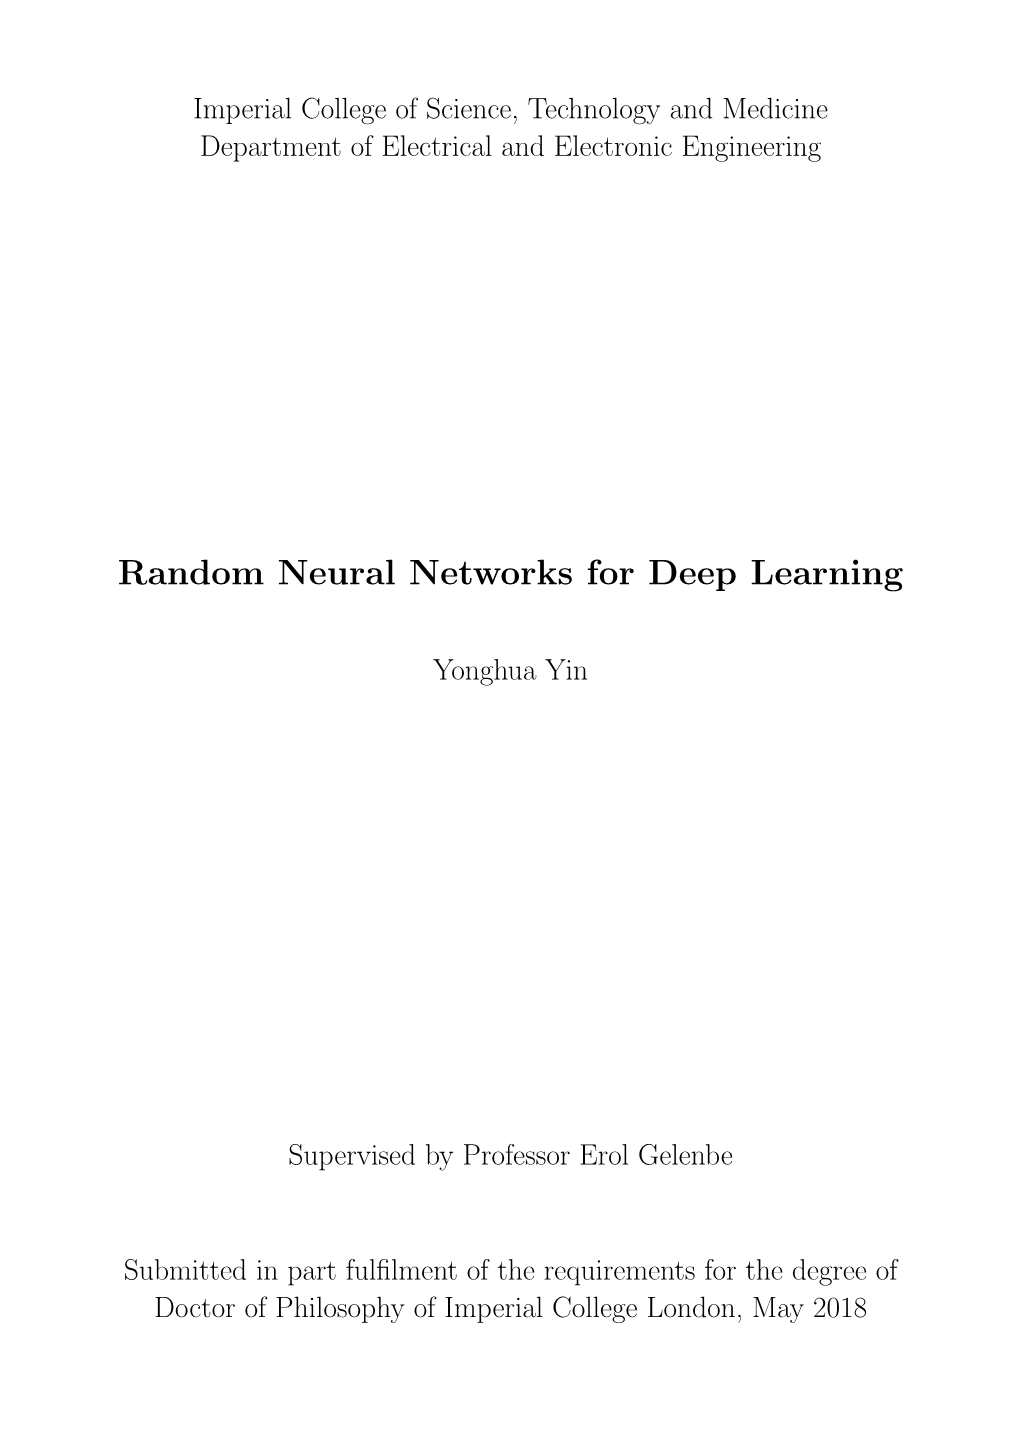 Random Neural Networks for Deep Learning